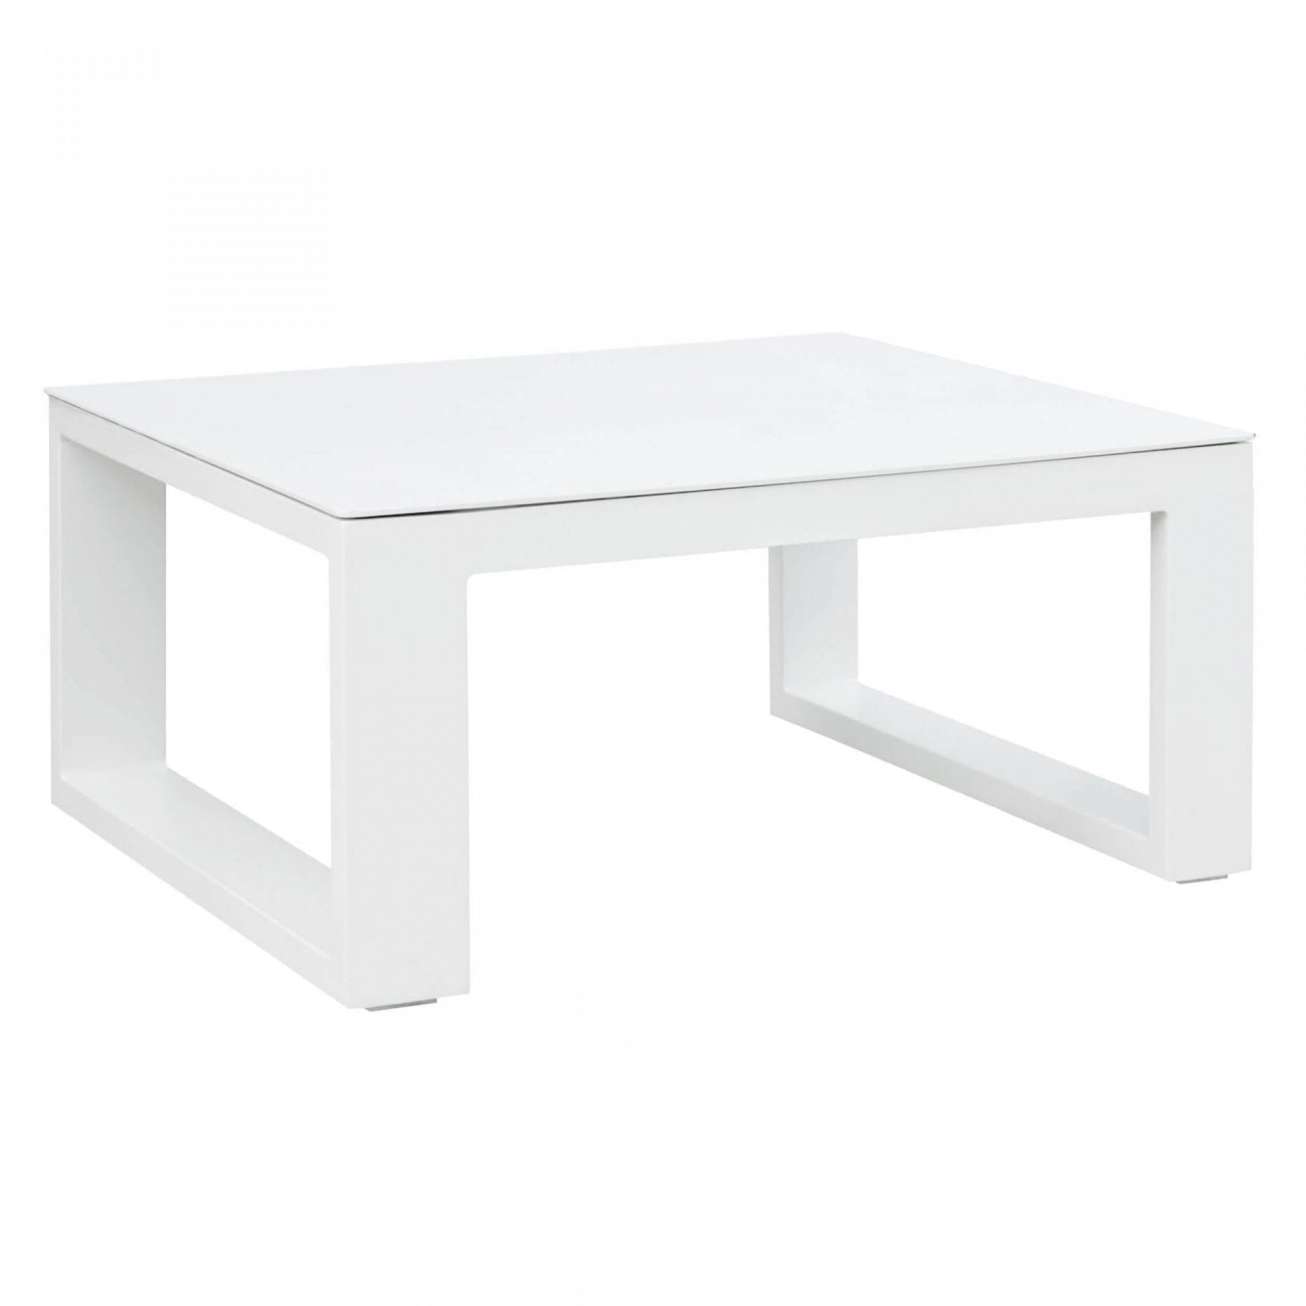 Gardenart bord av aluminium i hvit farge